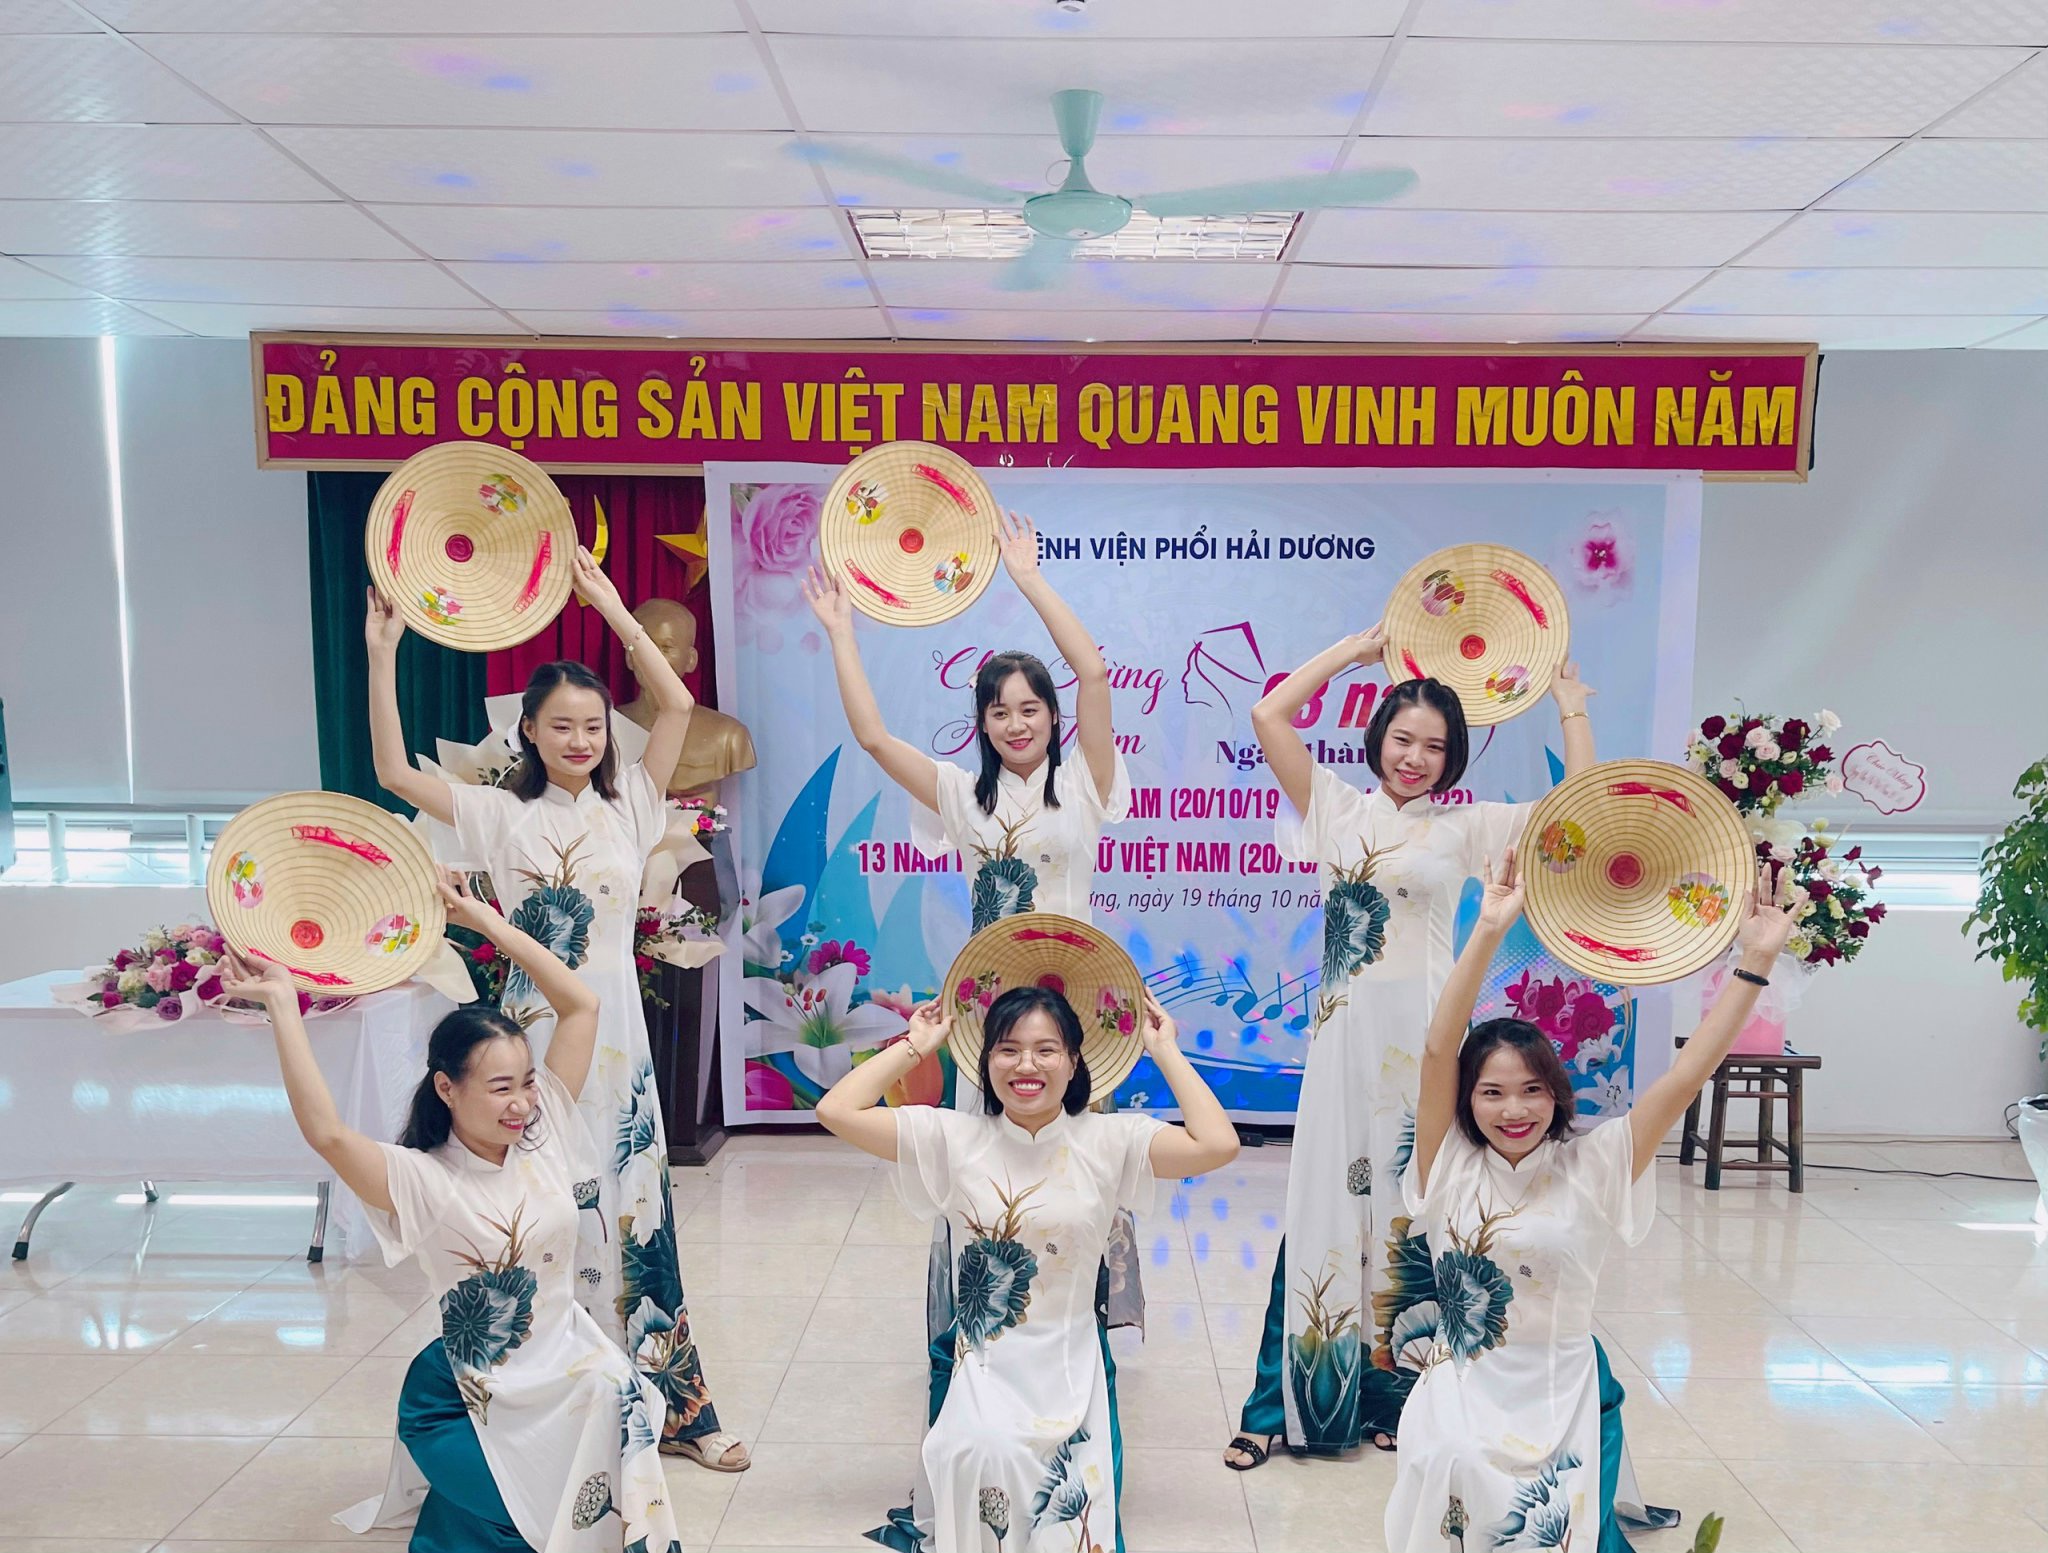 Bệnh viện Phổi Hải Dương tổ chức lễ mít tinh kỷ niệm ngày Phụ nữ Việt Nam 20/10.